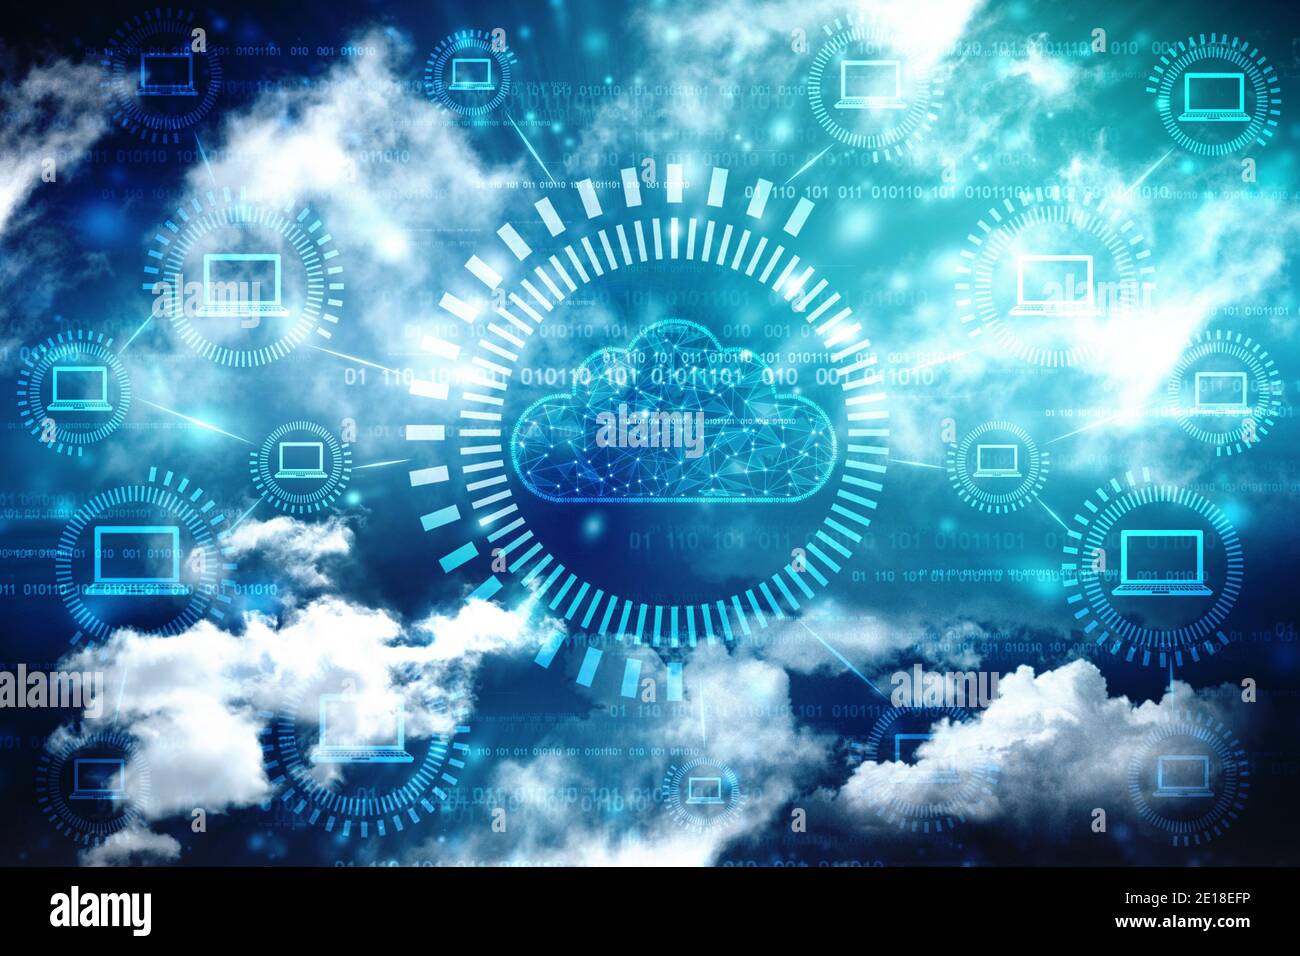 Cloud computing, présentation du concept de Cloud computing numérique. Concept de cyber-technologie, de stockage de données sur Internet, de base de données et de serveur mobile Banque D'Images